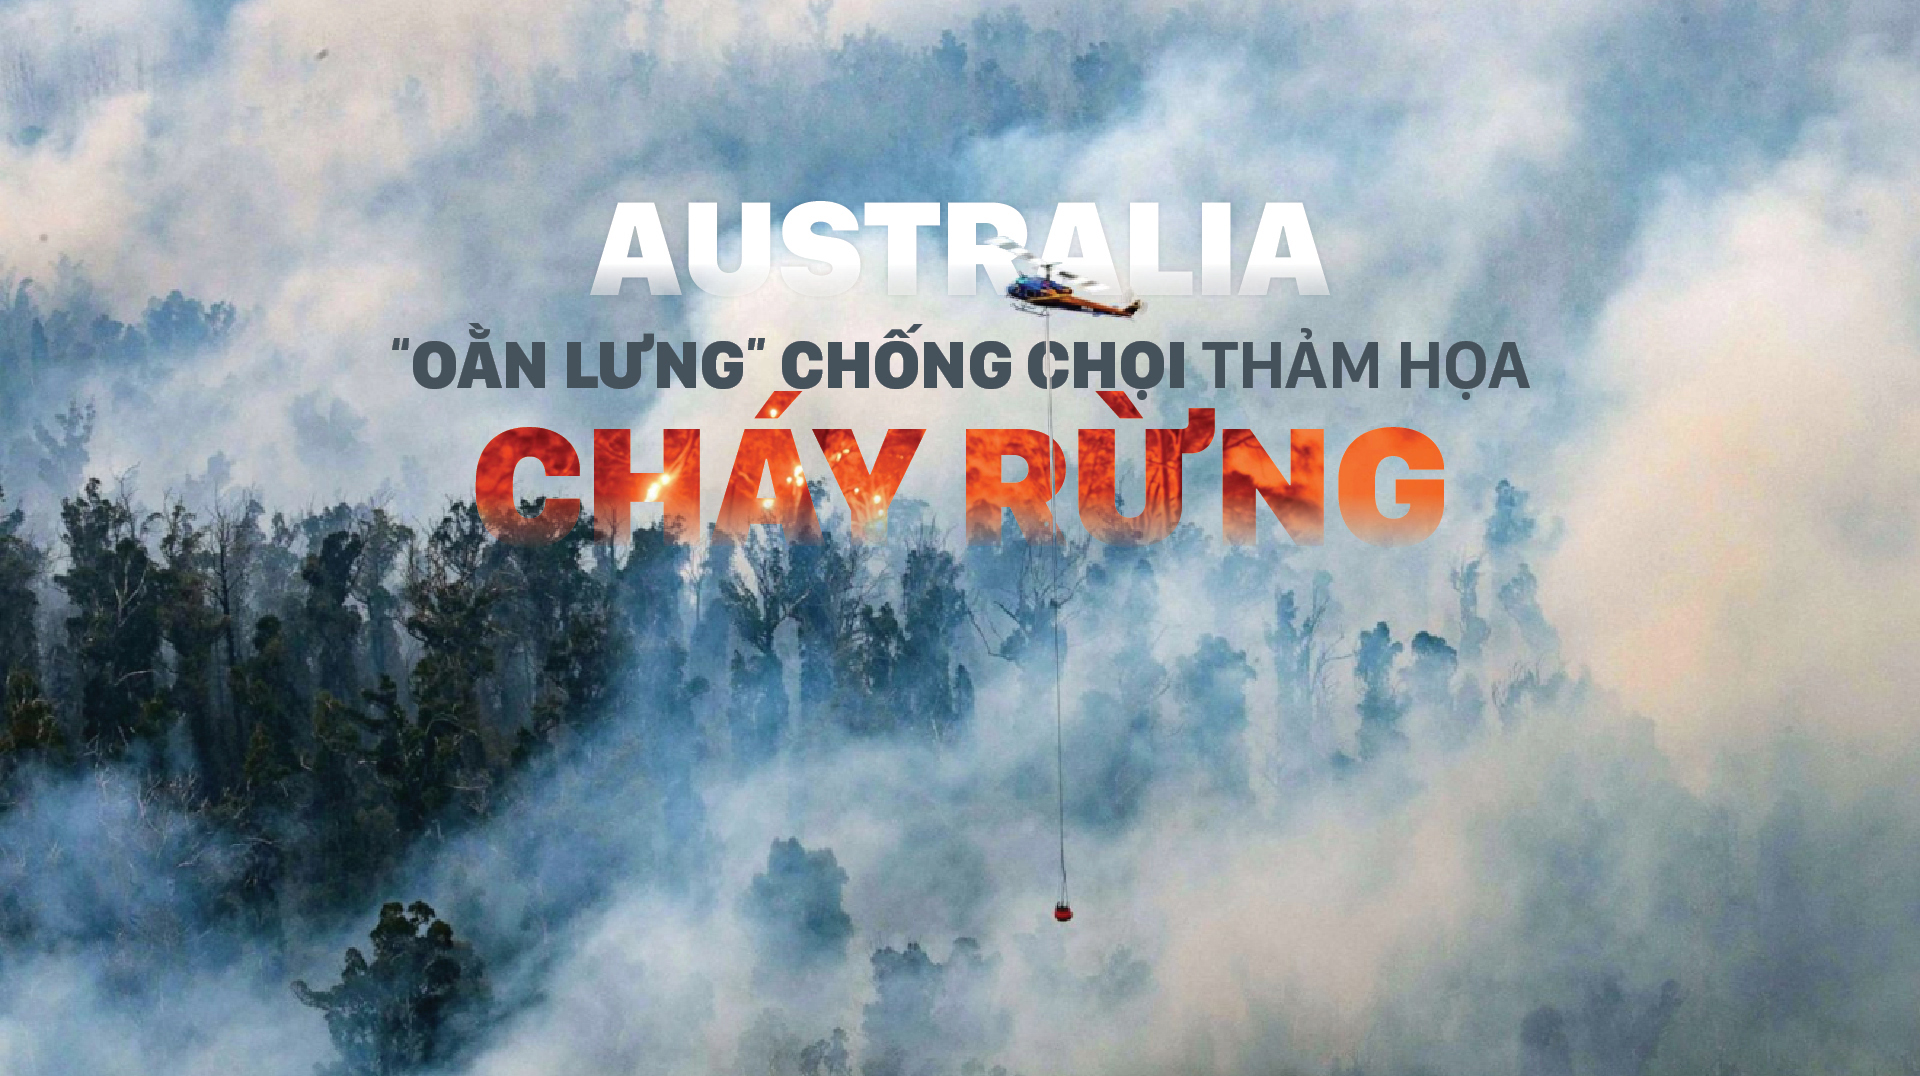 Australia “oằn lưng” chống chọi thảm họa cháy rừng